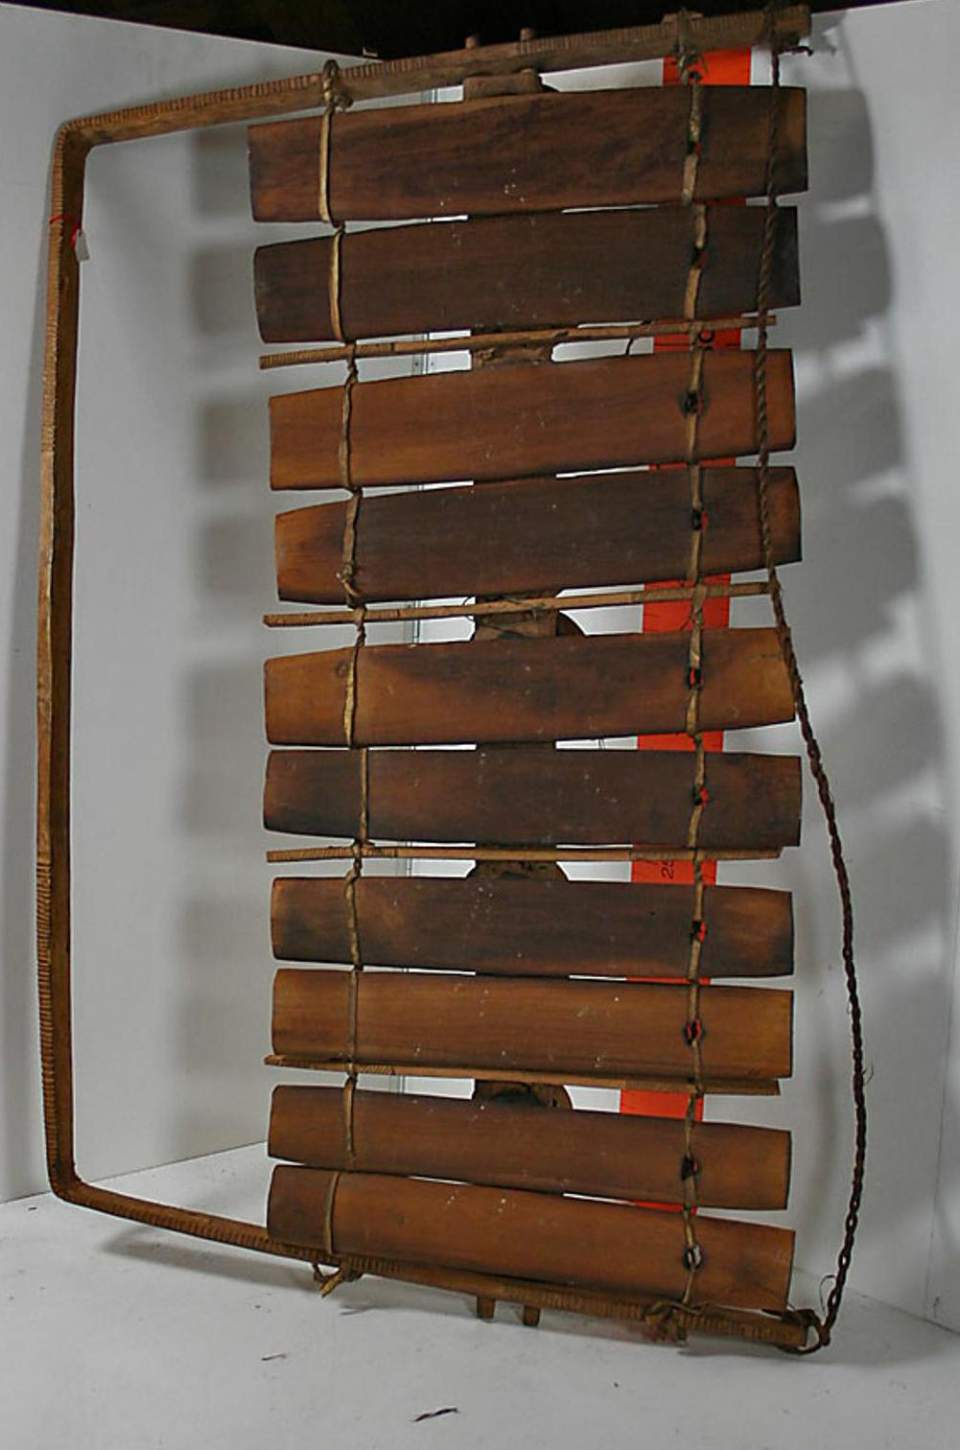 Marimba (Musikinstrument)